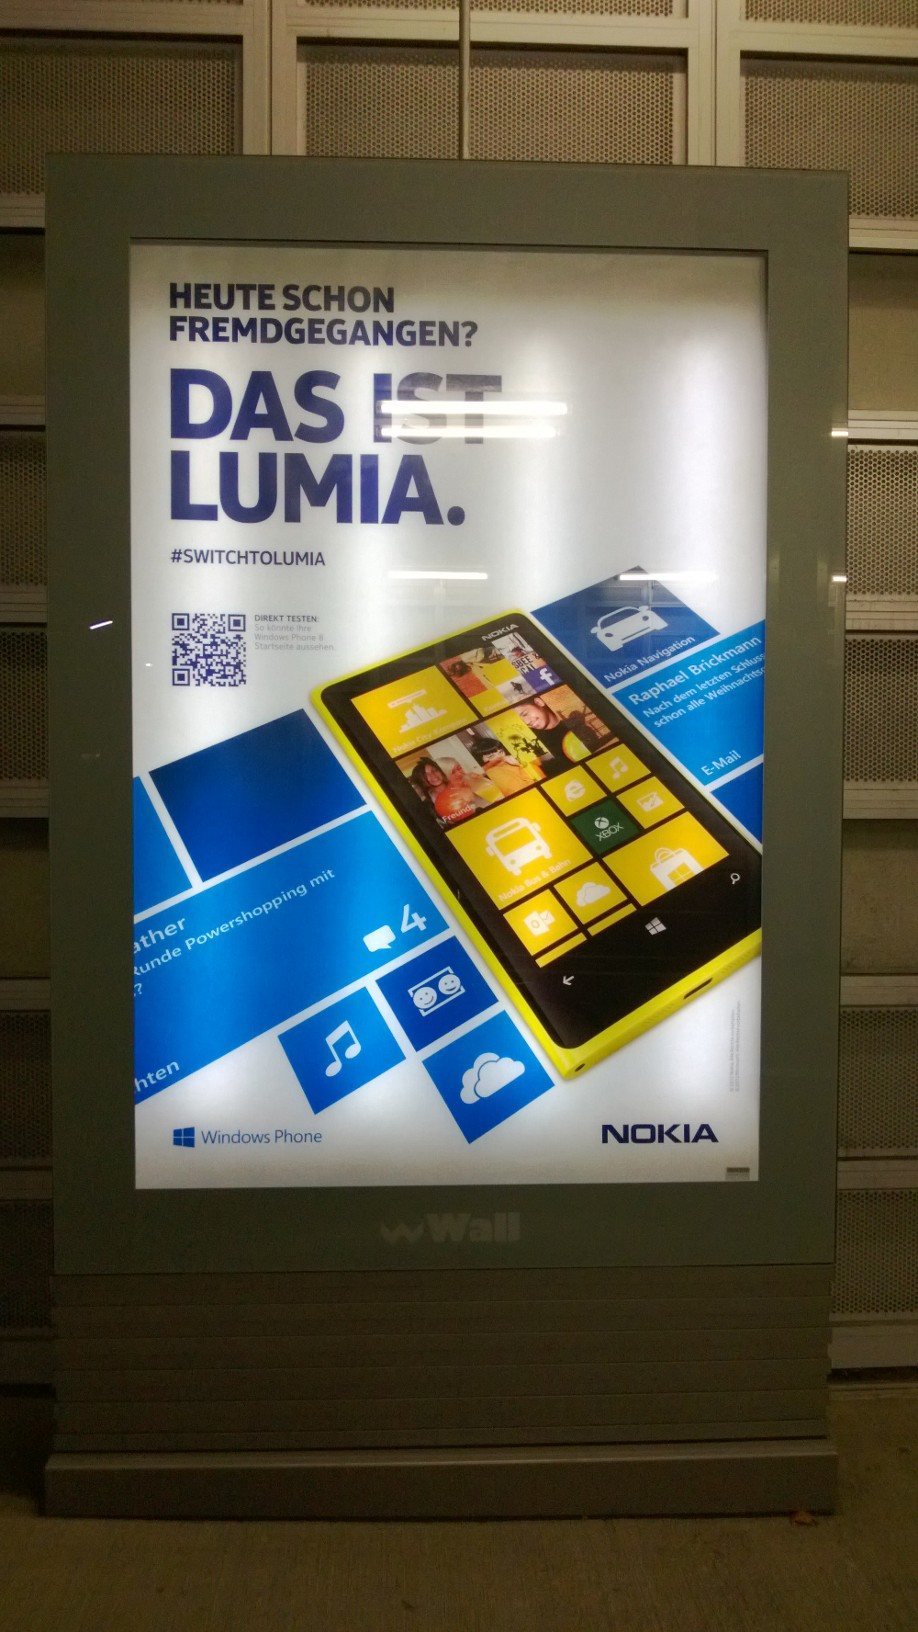 Nokia: Heute schon fremdgegangen?